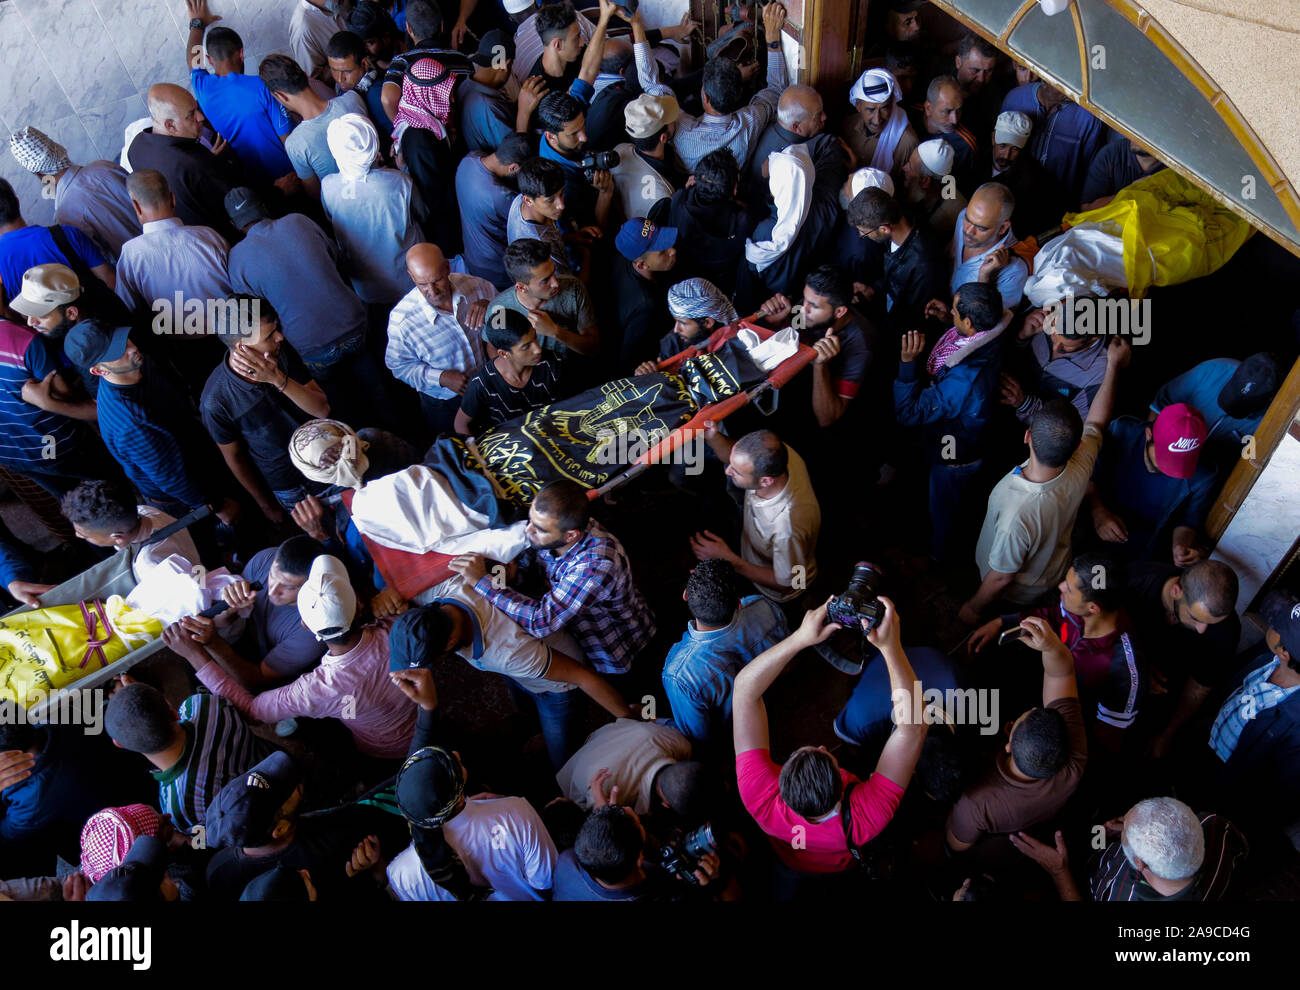 (EDITOR'S NOTE: Bild zeigt Tod) Palästinensische trauernde durchführen, die Körper von Rasmi Abu Malhous und sieben Mitglieder seiner Familie während der Trauerfeier in einer Moschee in Deir al-Balah, zentralen Gazastreifen. Die Verstorbenen wurden in einer Nacht israelischen Raketenangriff, dass Ihr Haus gezielt getötet. Stockfoto